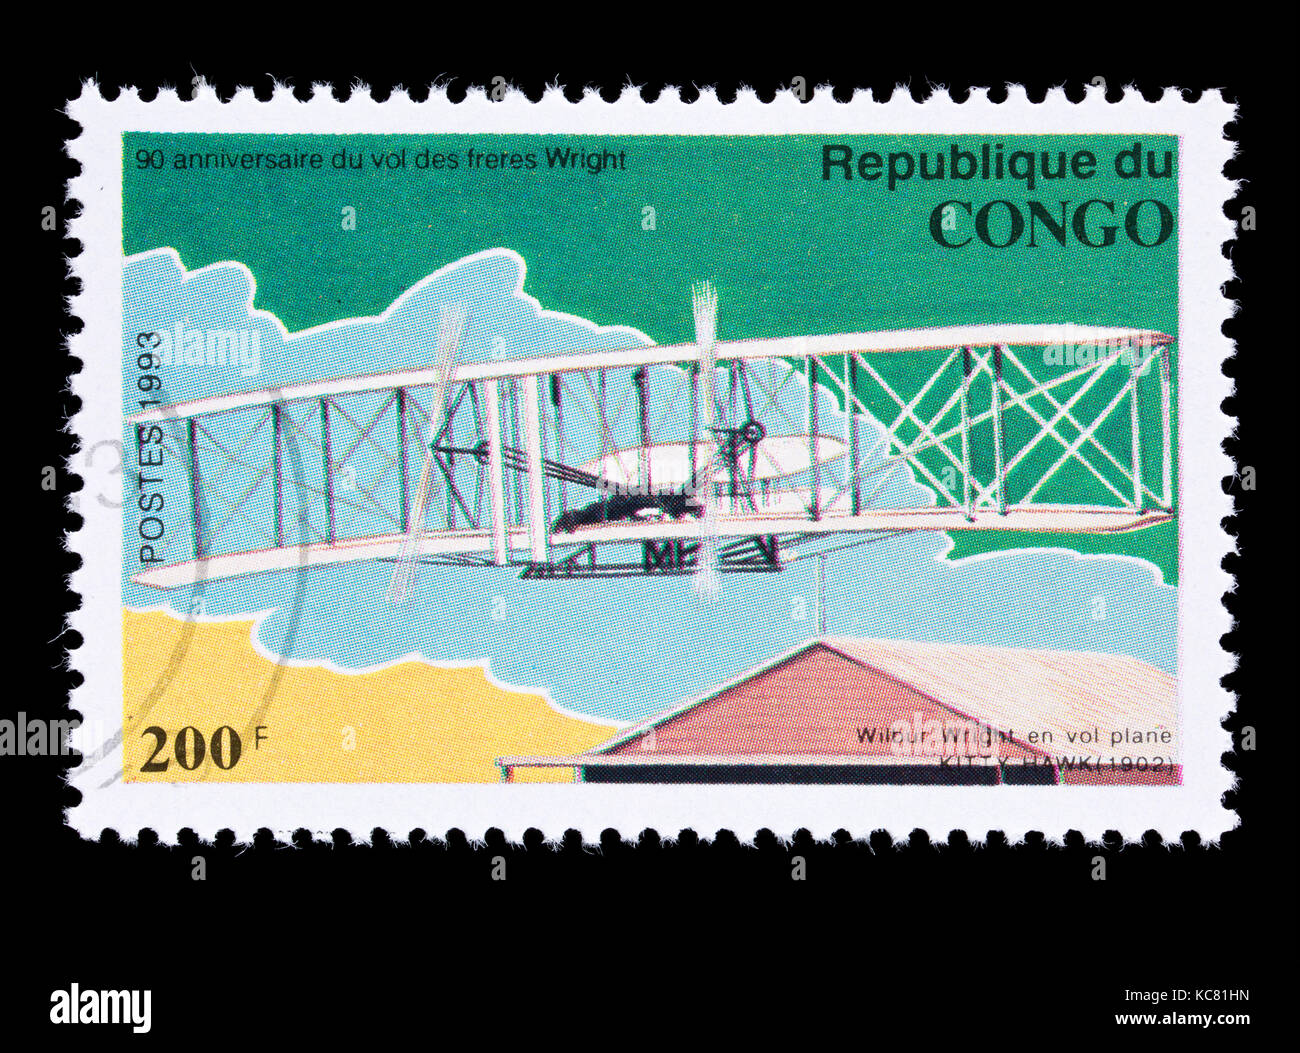 Timbre-poste de Congo représentant le premier vol des frères Wright à Kitty Hawk, 90e anniversaire Banque D'Images